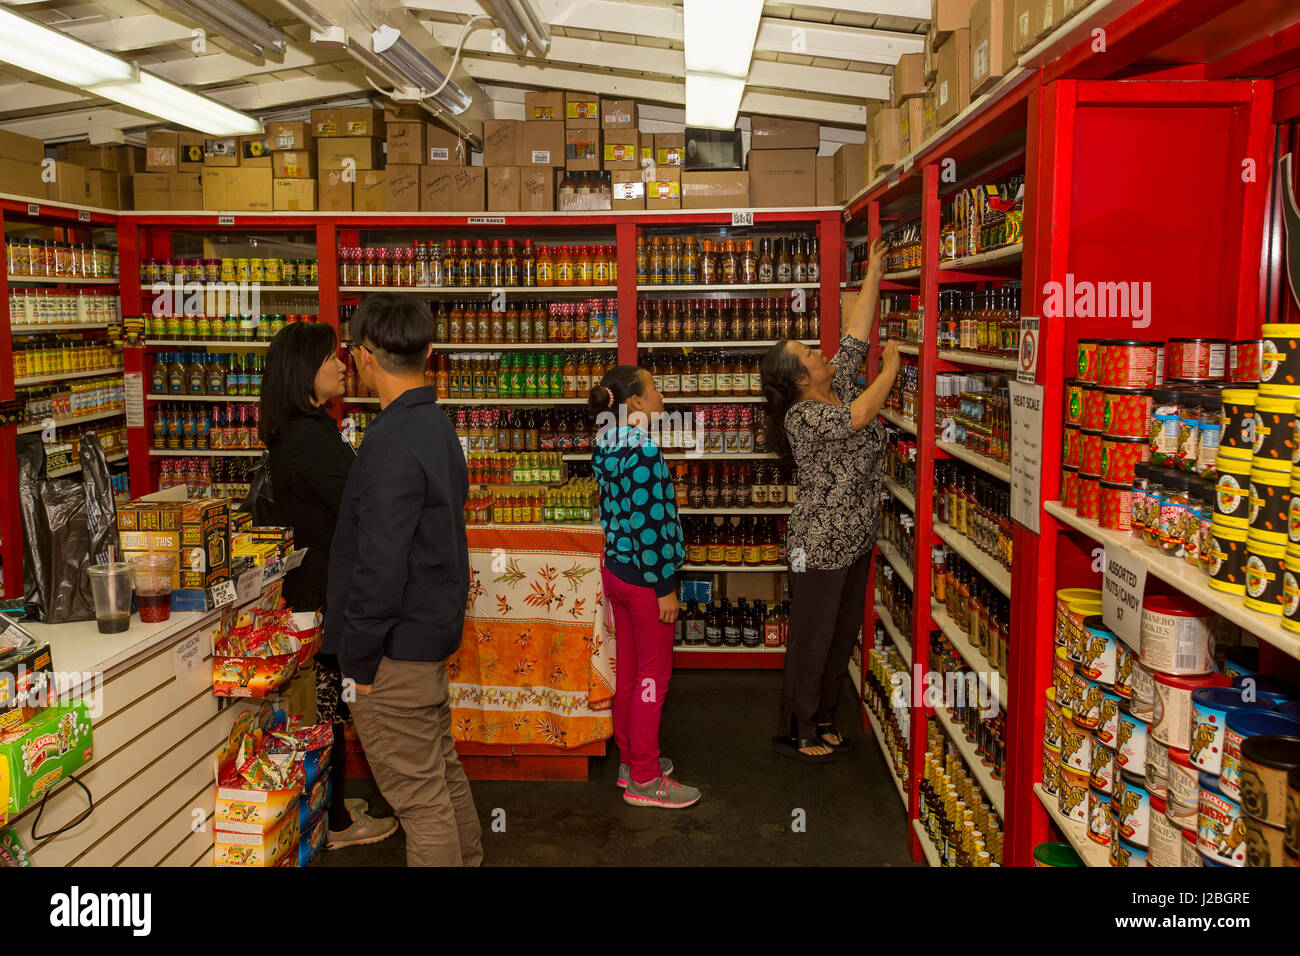 Menschen, die einkaufen, heiße Soße, scharfe Saucen, Bauern-Markt, 3rd Street und Fairfax Avenue, Los Angeles, Kalifornien Stockfoto